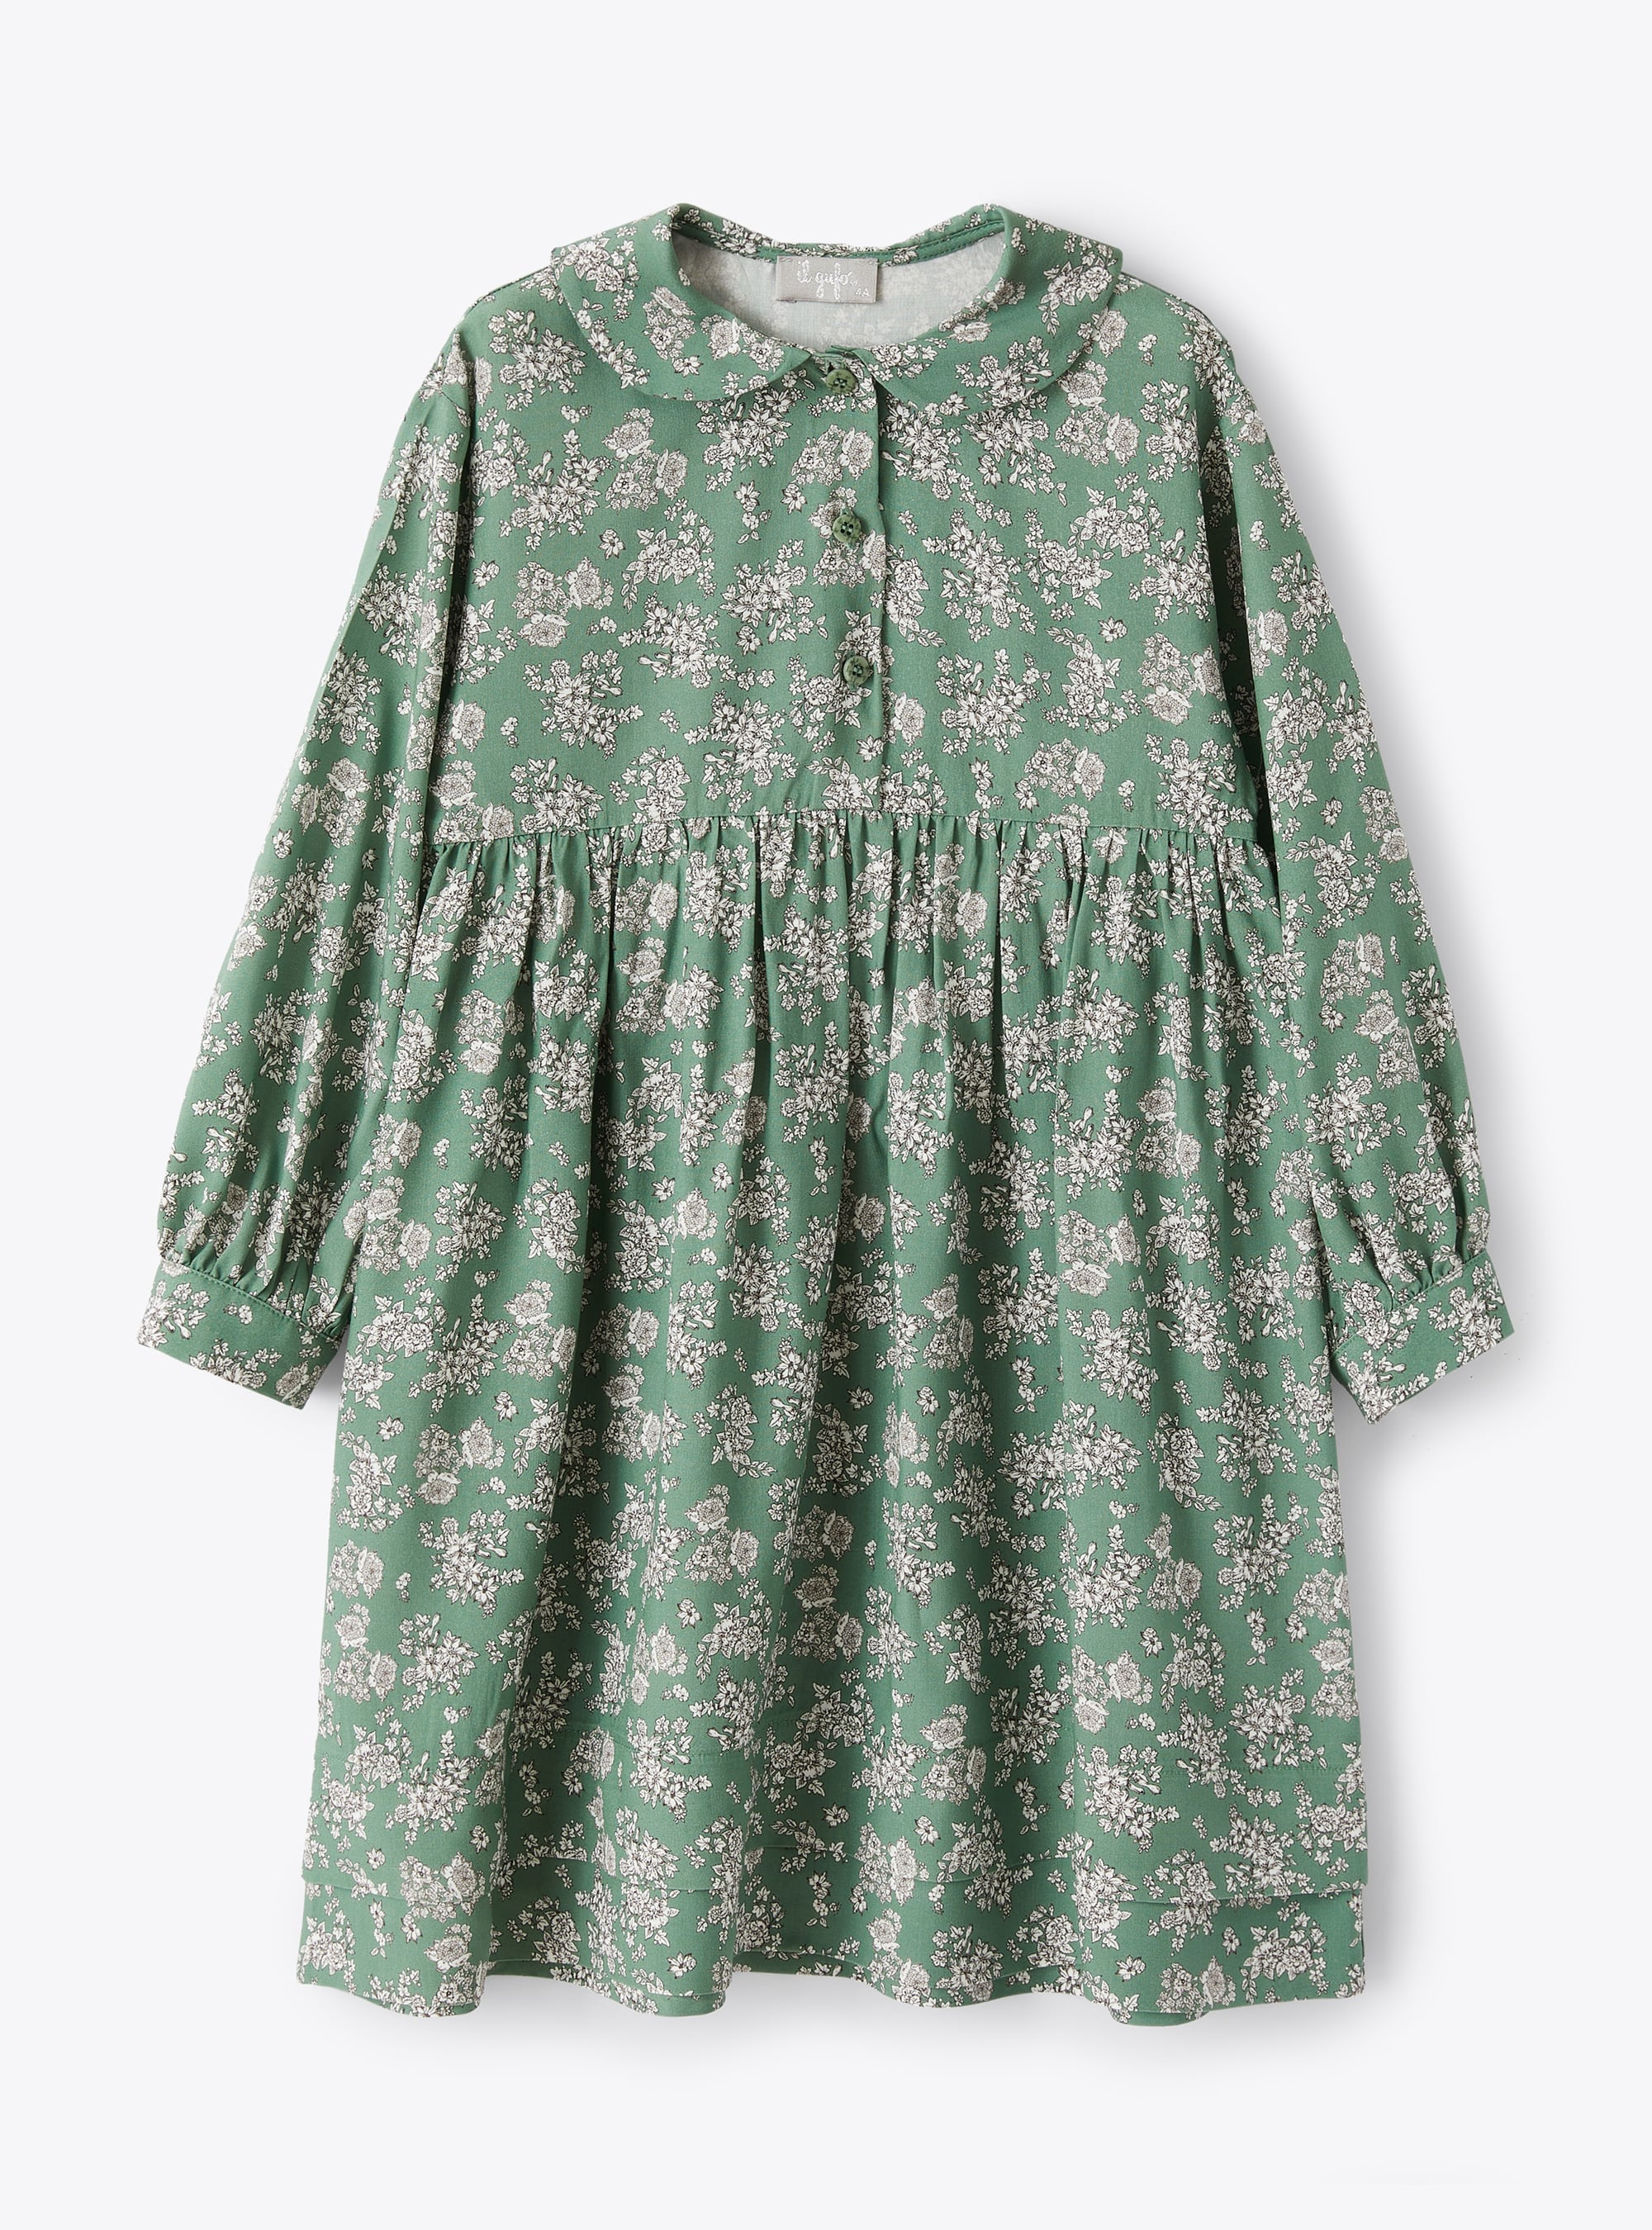 Grünes Kleid mit Blumendruck - Kleider - Il Gufo